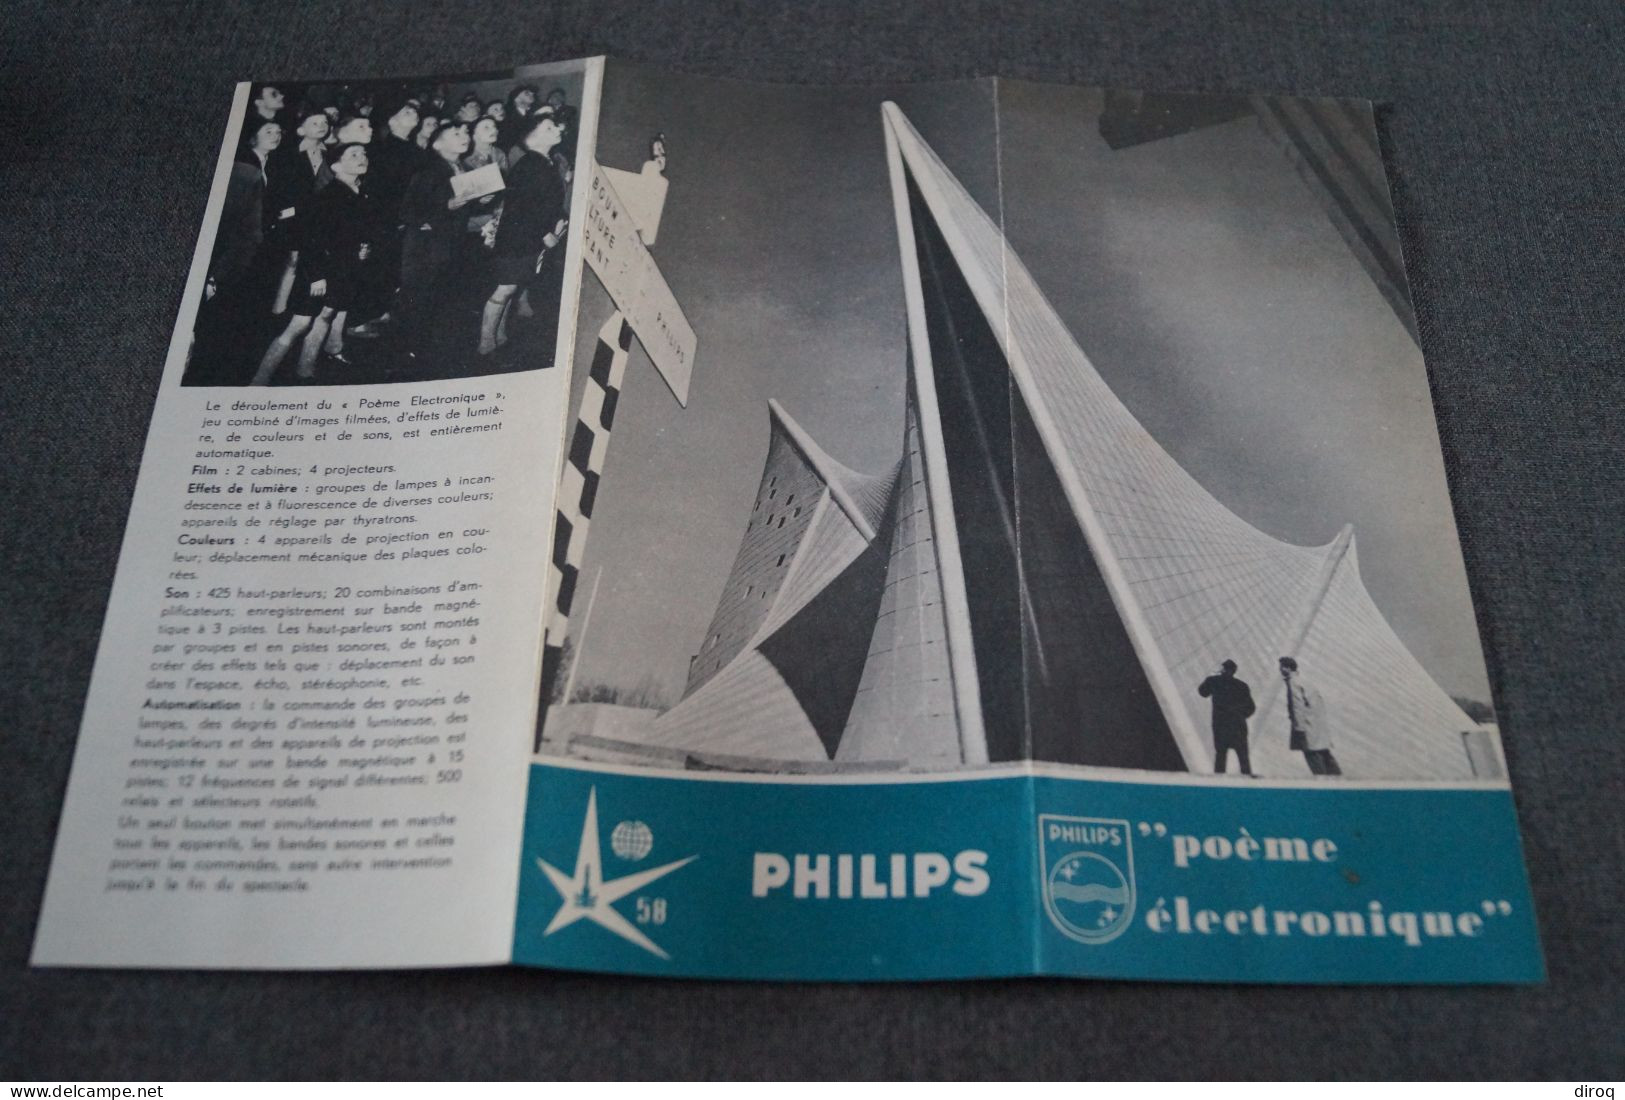 L' Expo 1958, Bruxelles,Philips,publicitaire,26,5 Cm. / 20 Cm. - Publicités